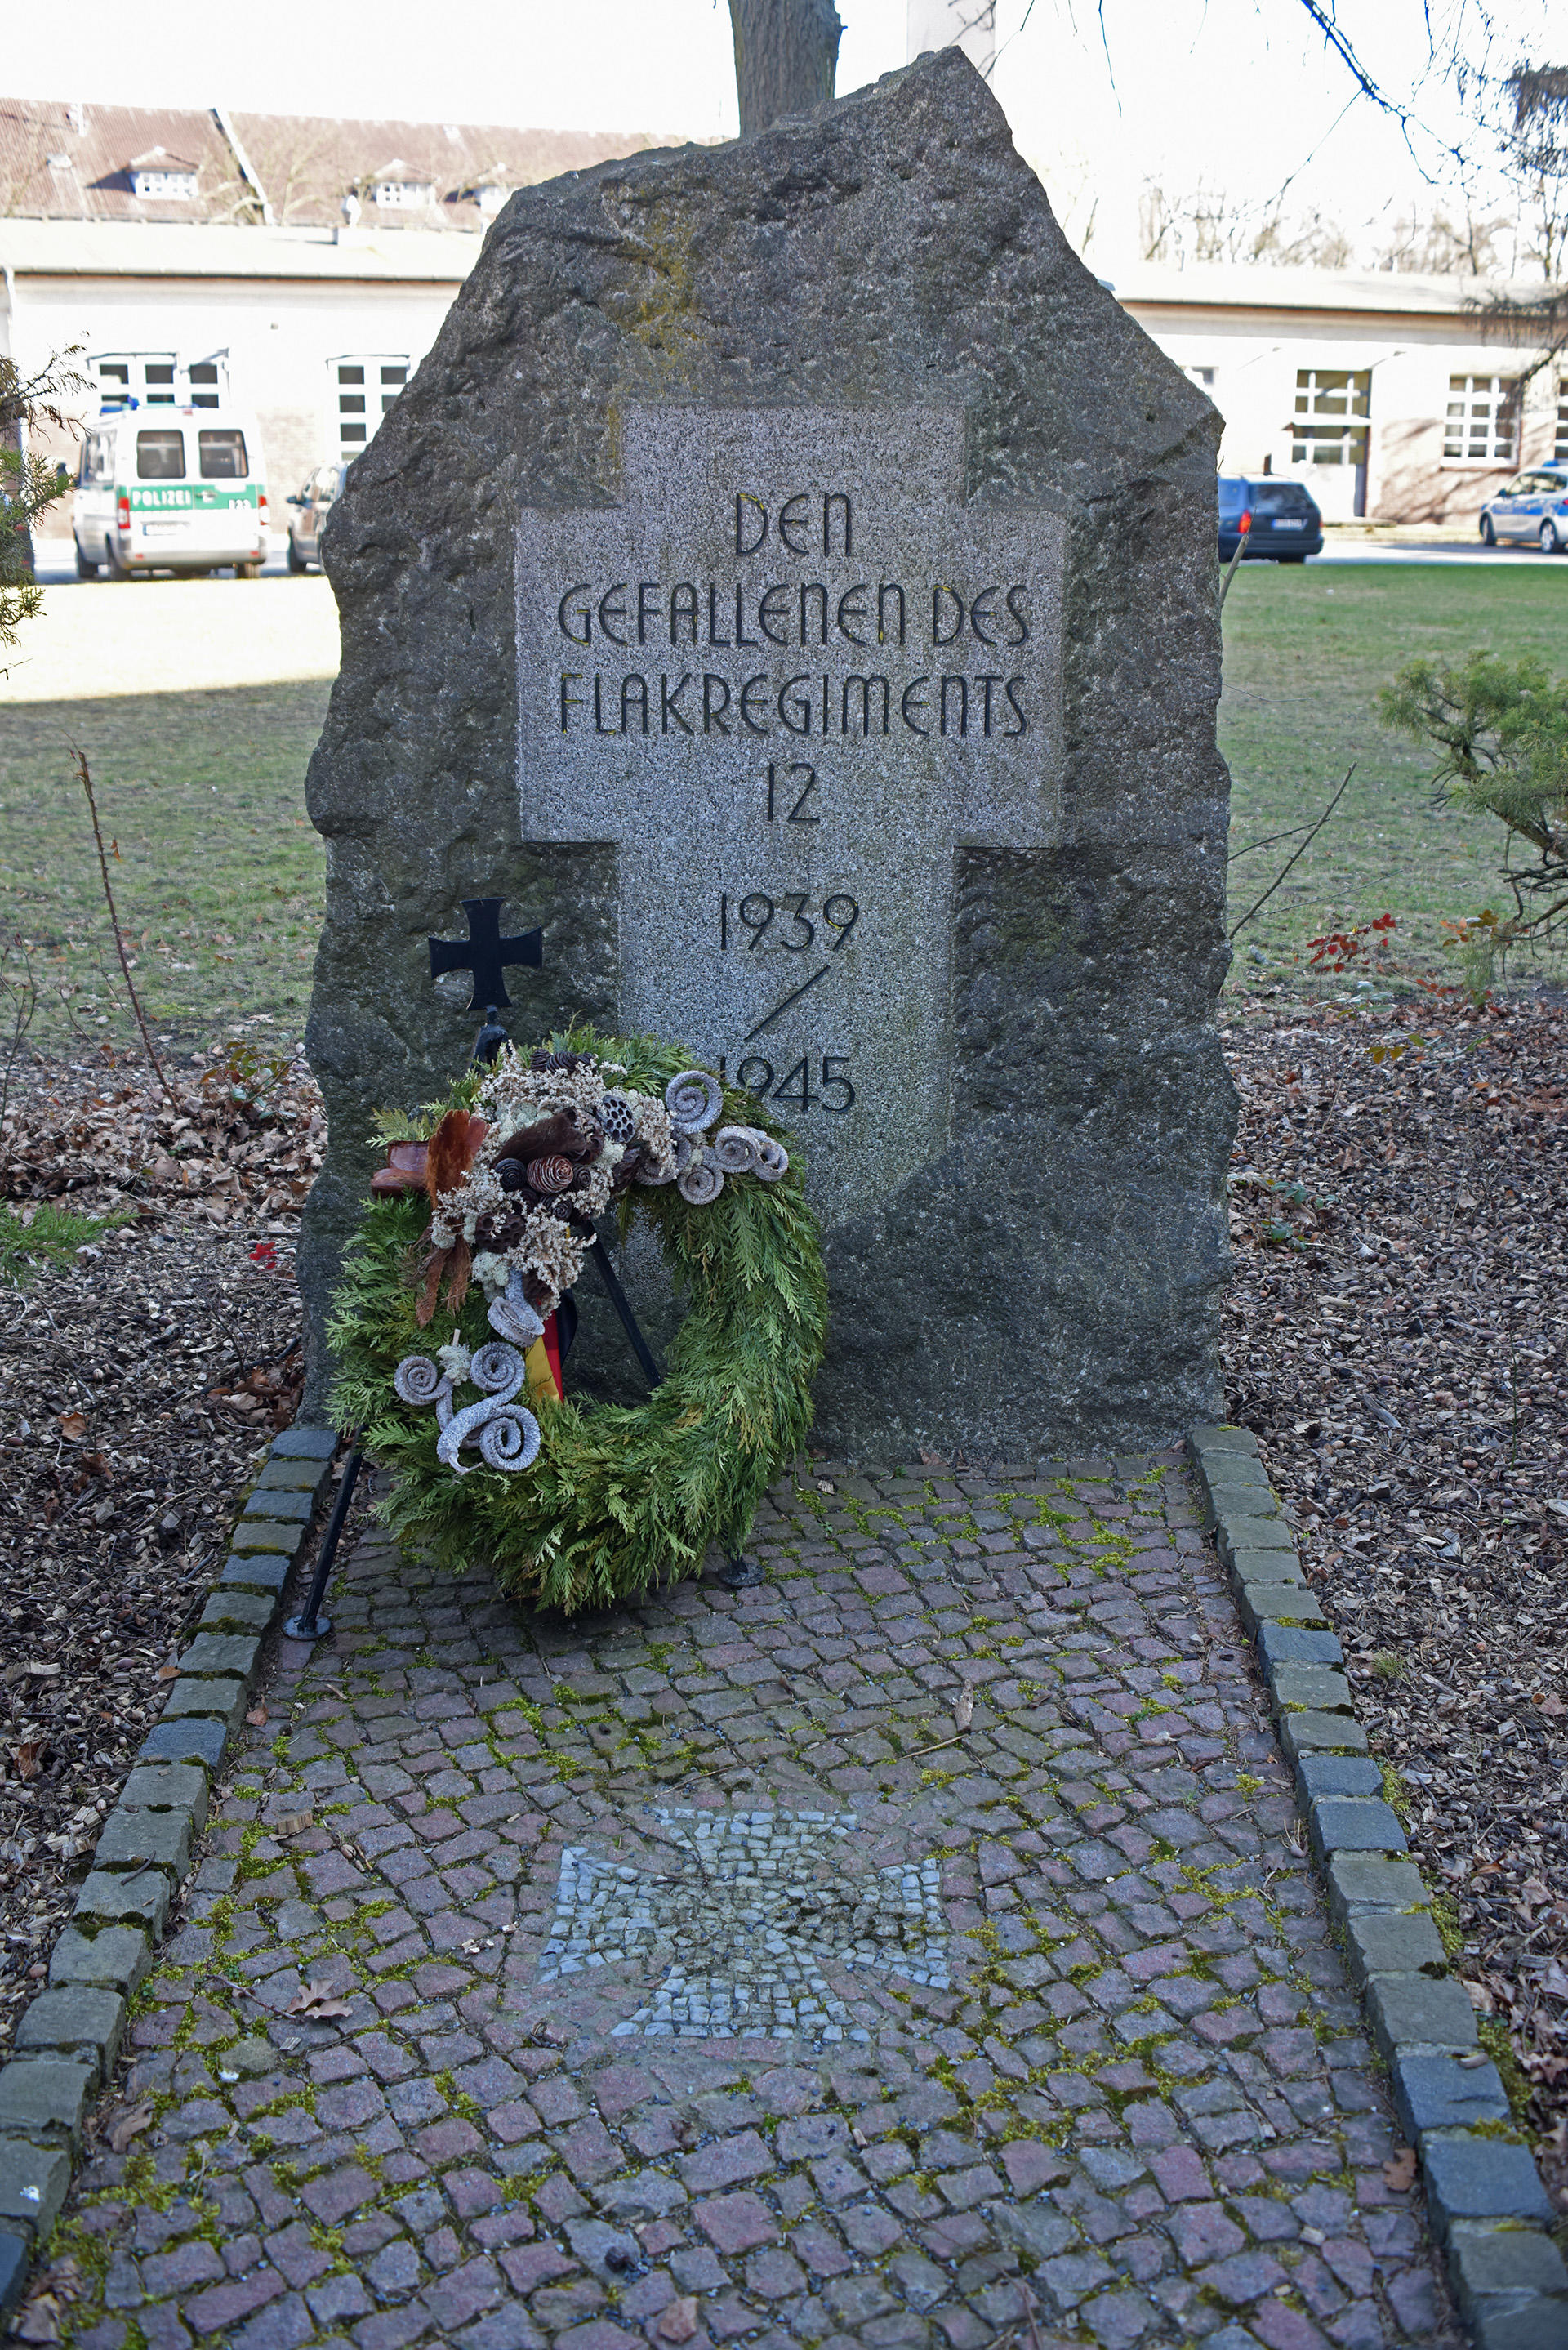 18b_Denkmal für die gefallenen des Flakregiments 1939-1945